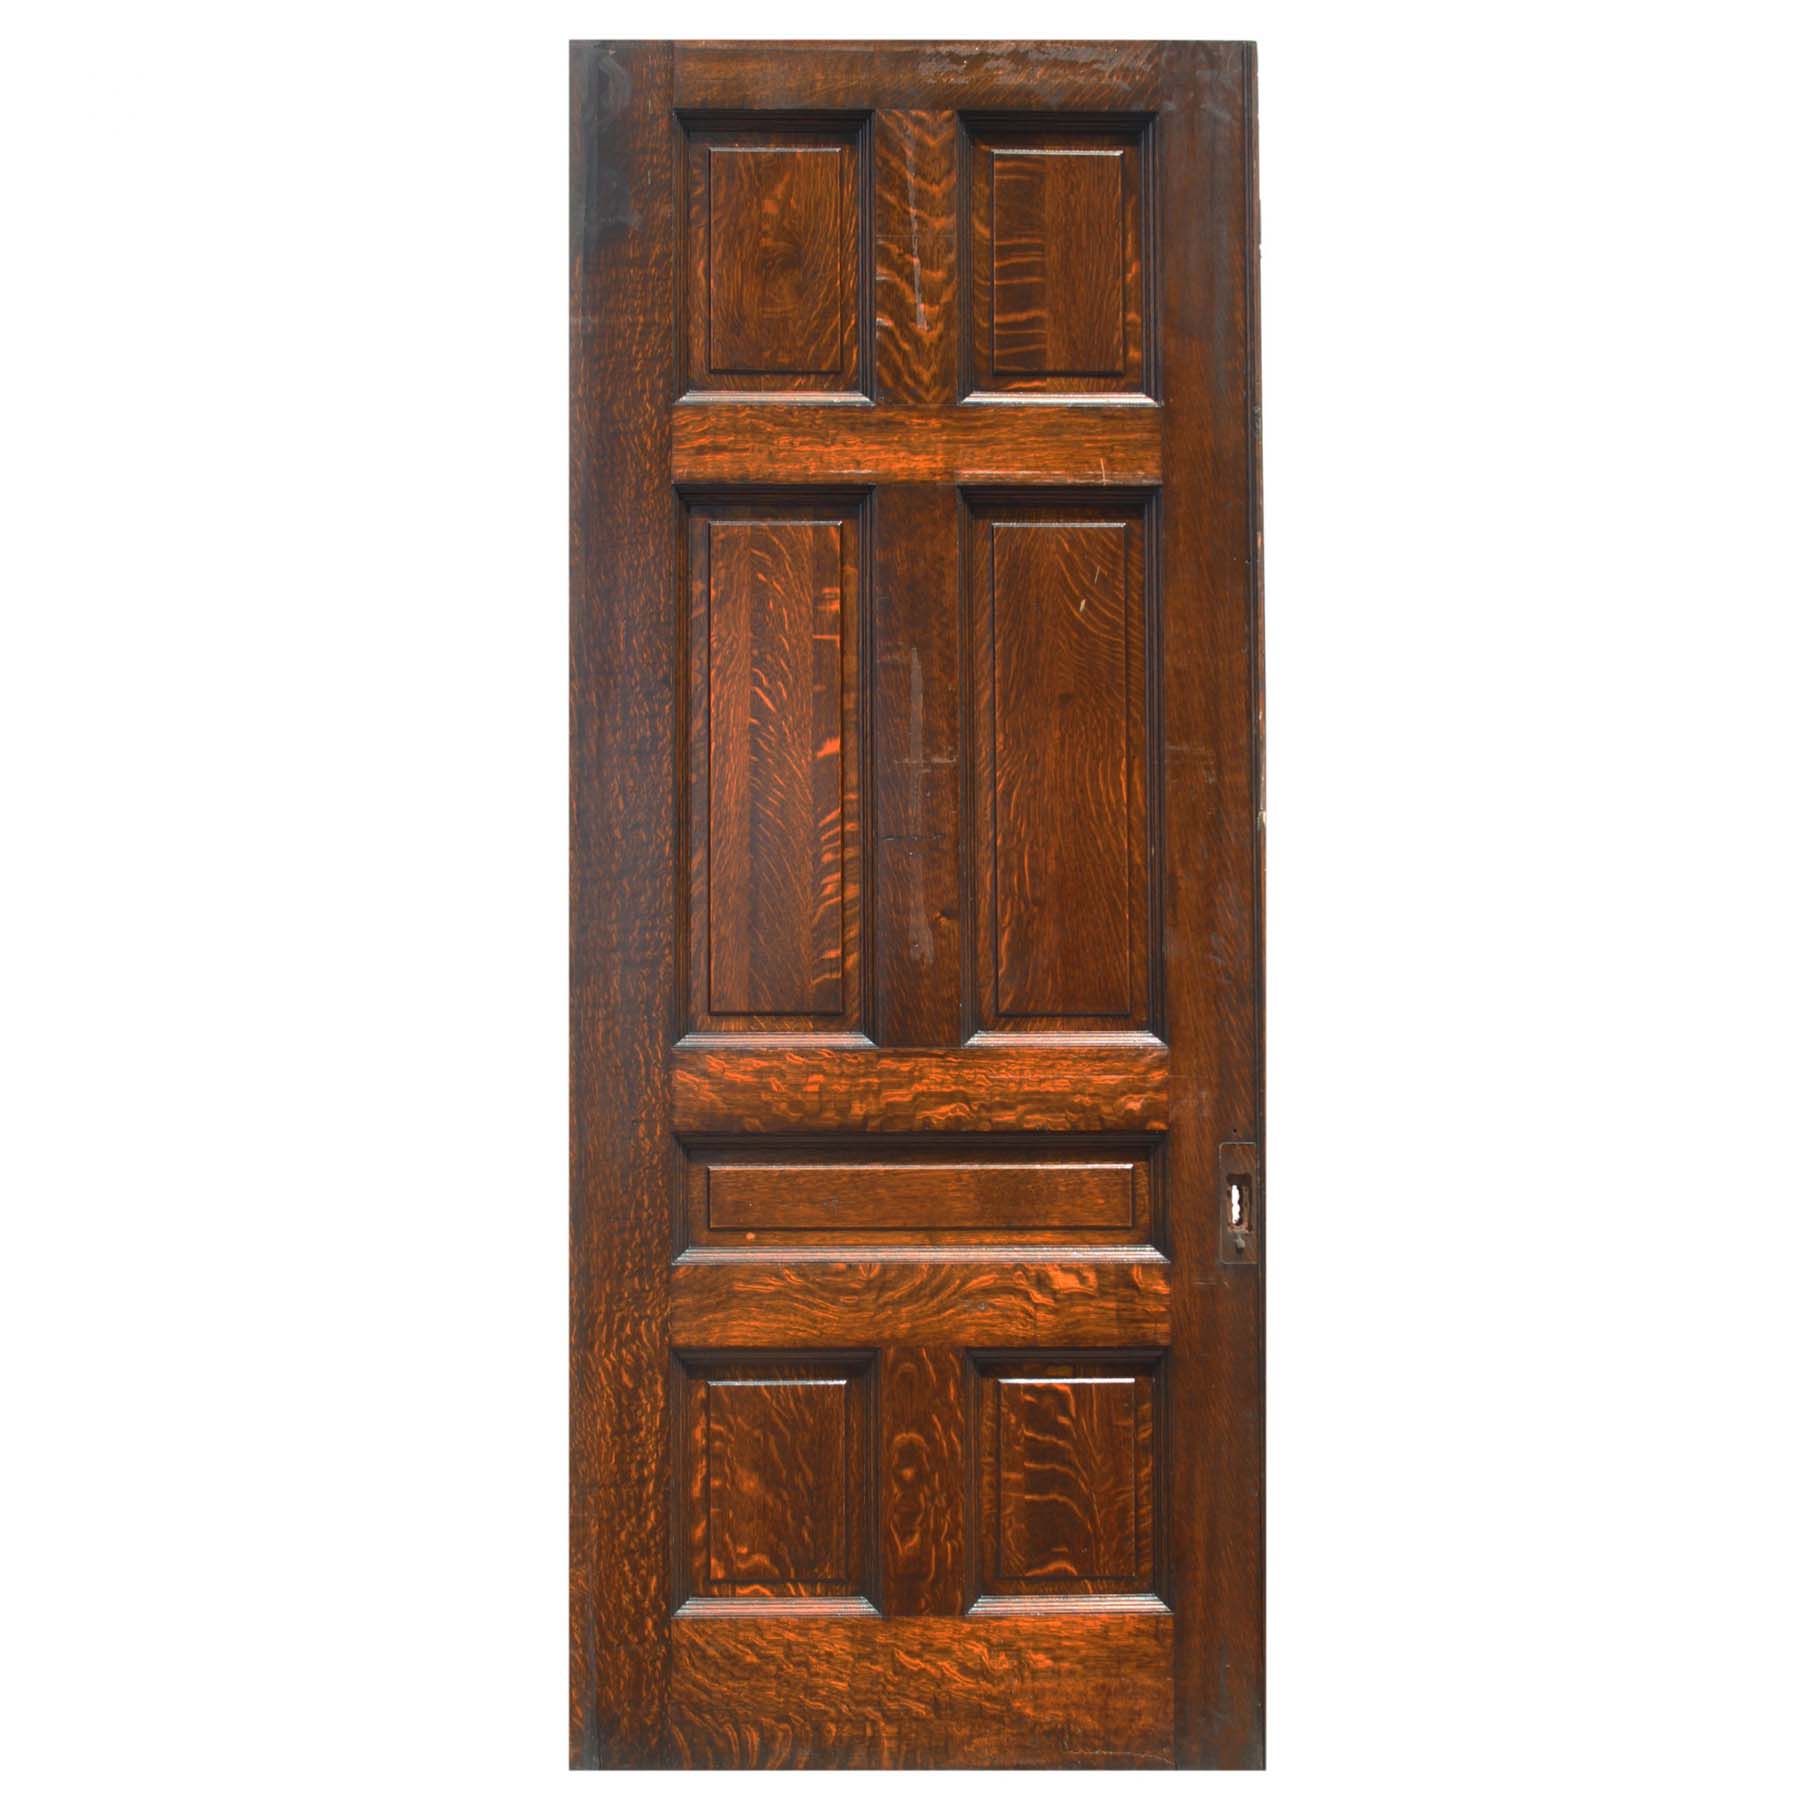 SOLD Substantial Antique 42” Oak Pocket Door, Manuel House c. 1910-0